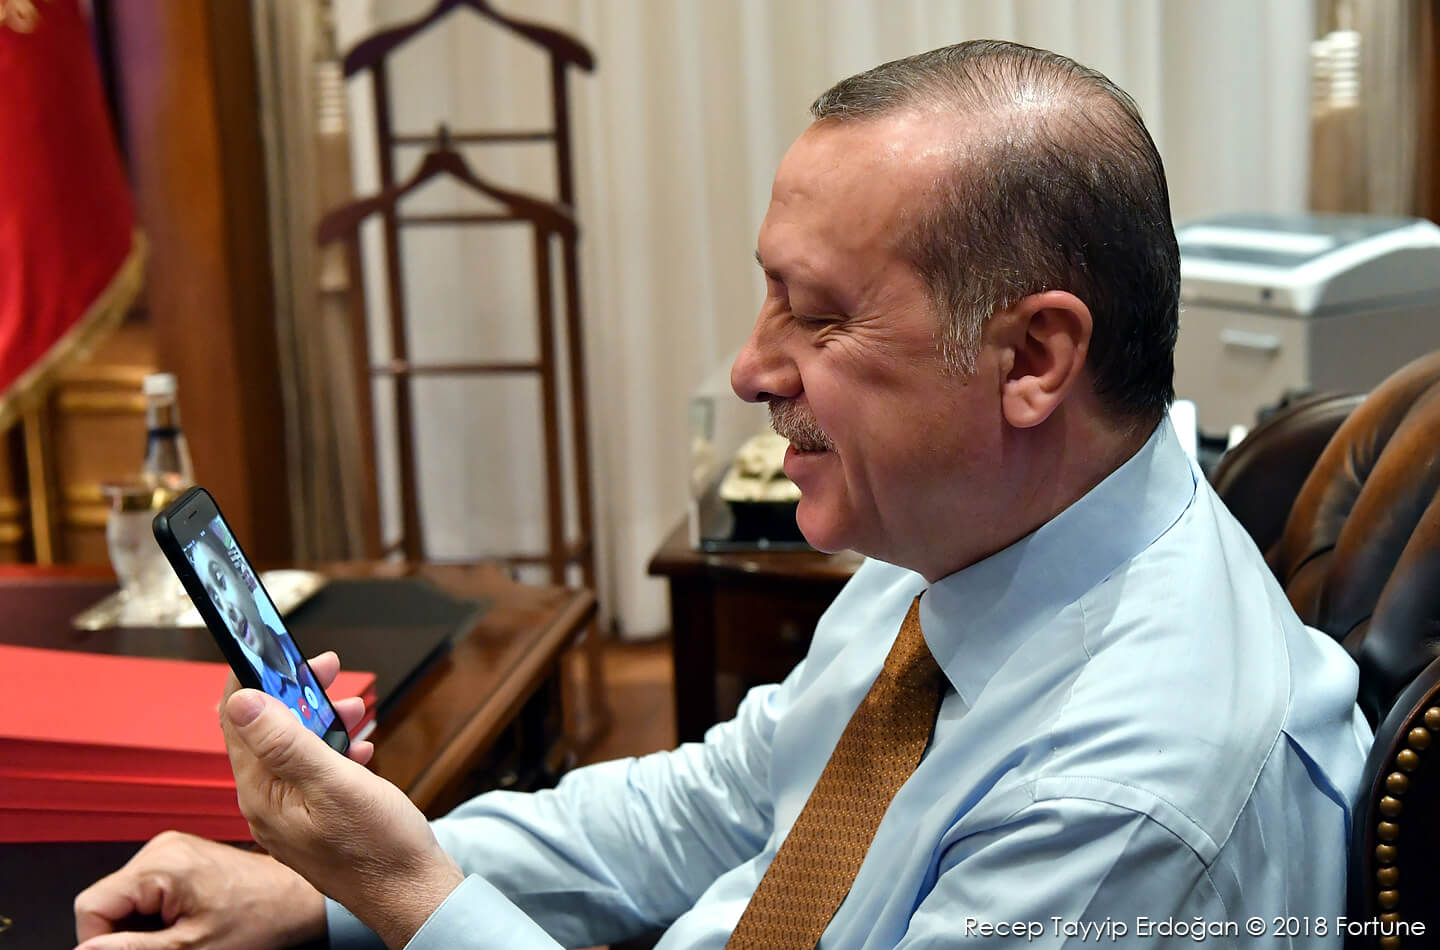 El teléfono inteligente Vestel que Erdogan quiere que los ciudadanos turcos compren